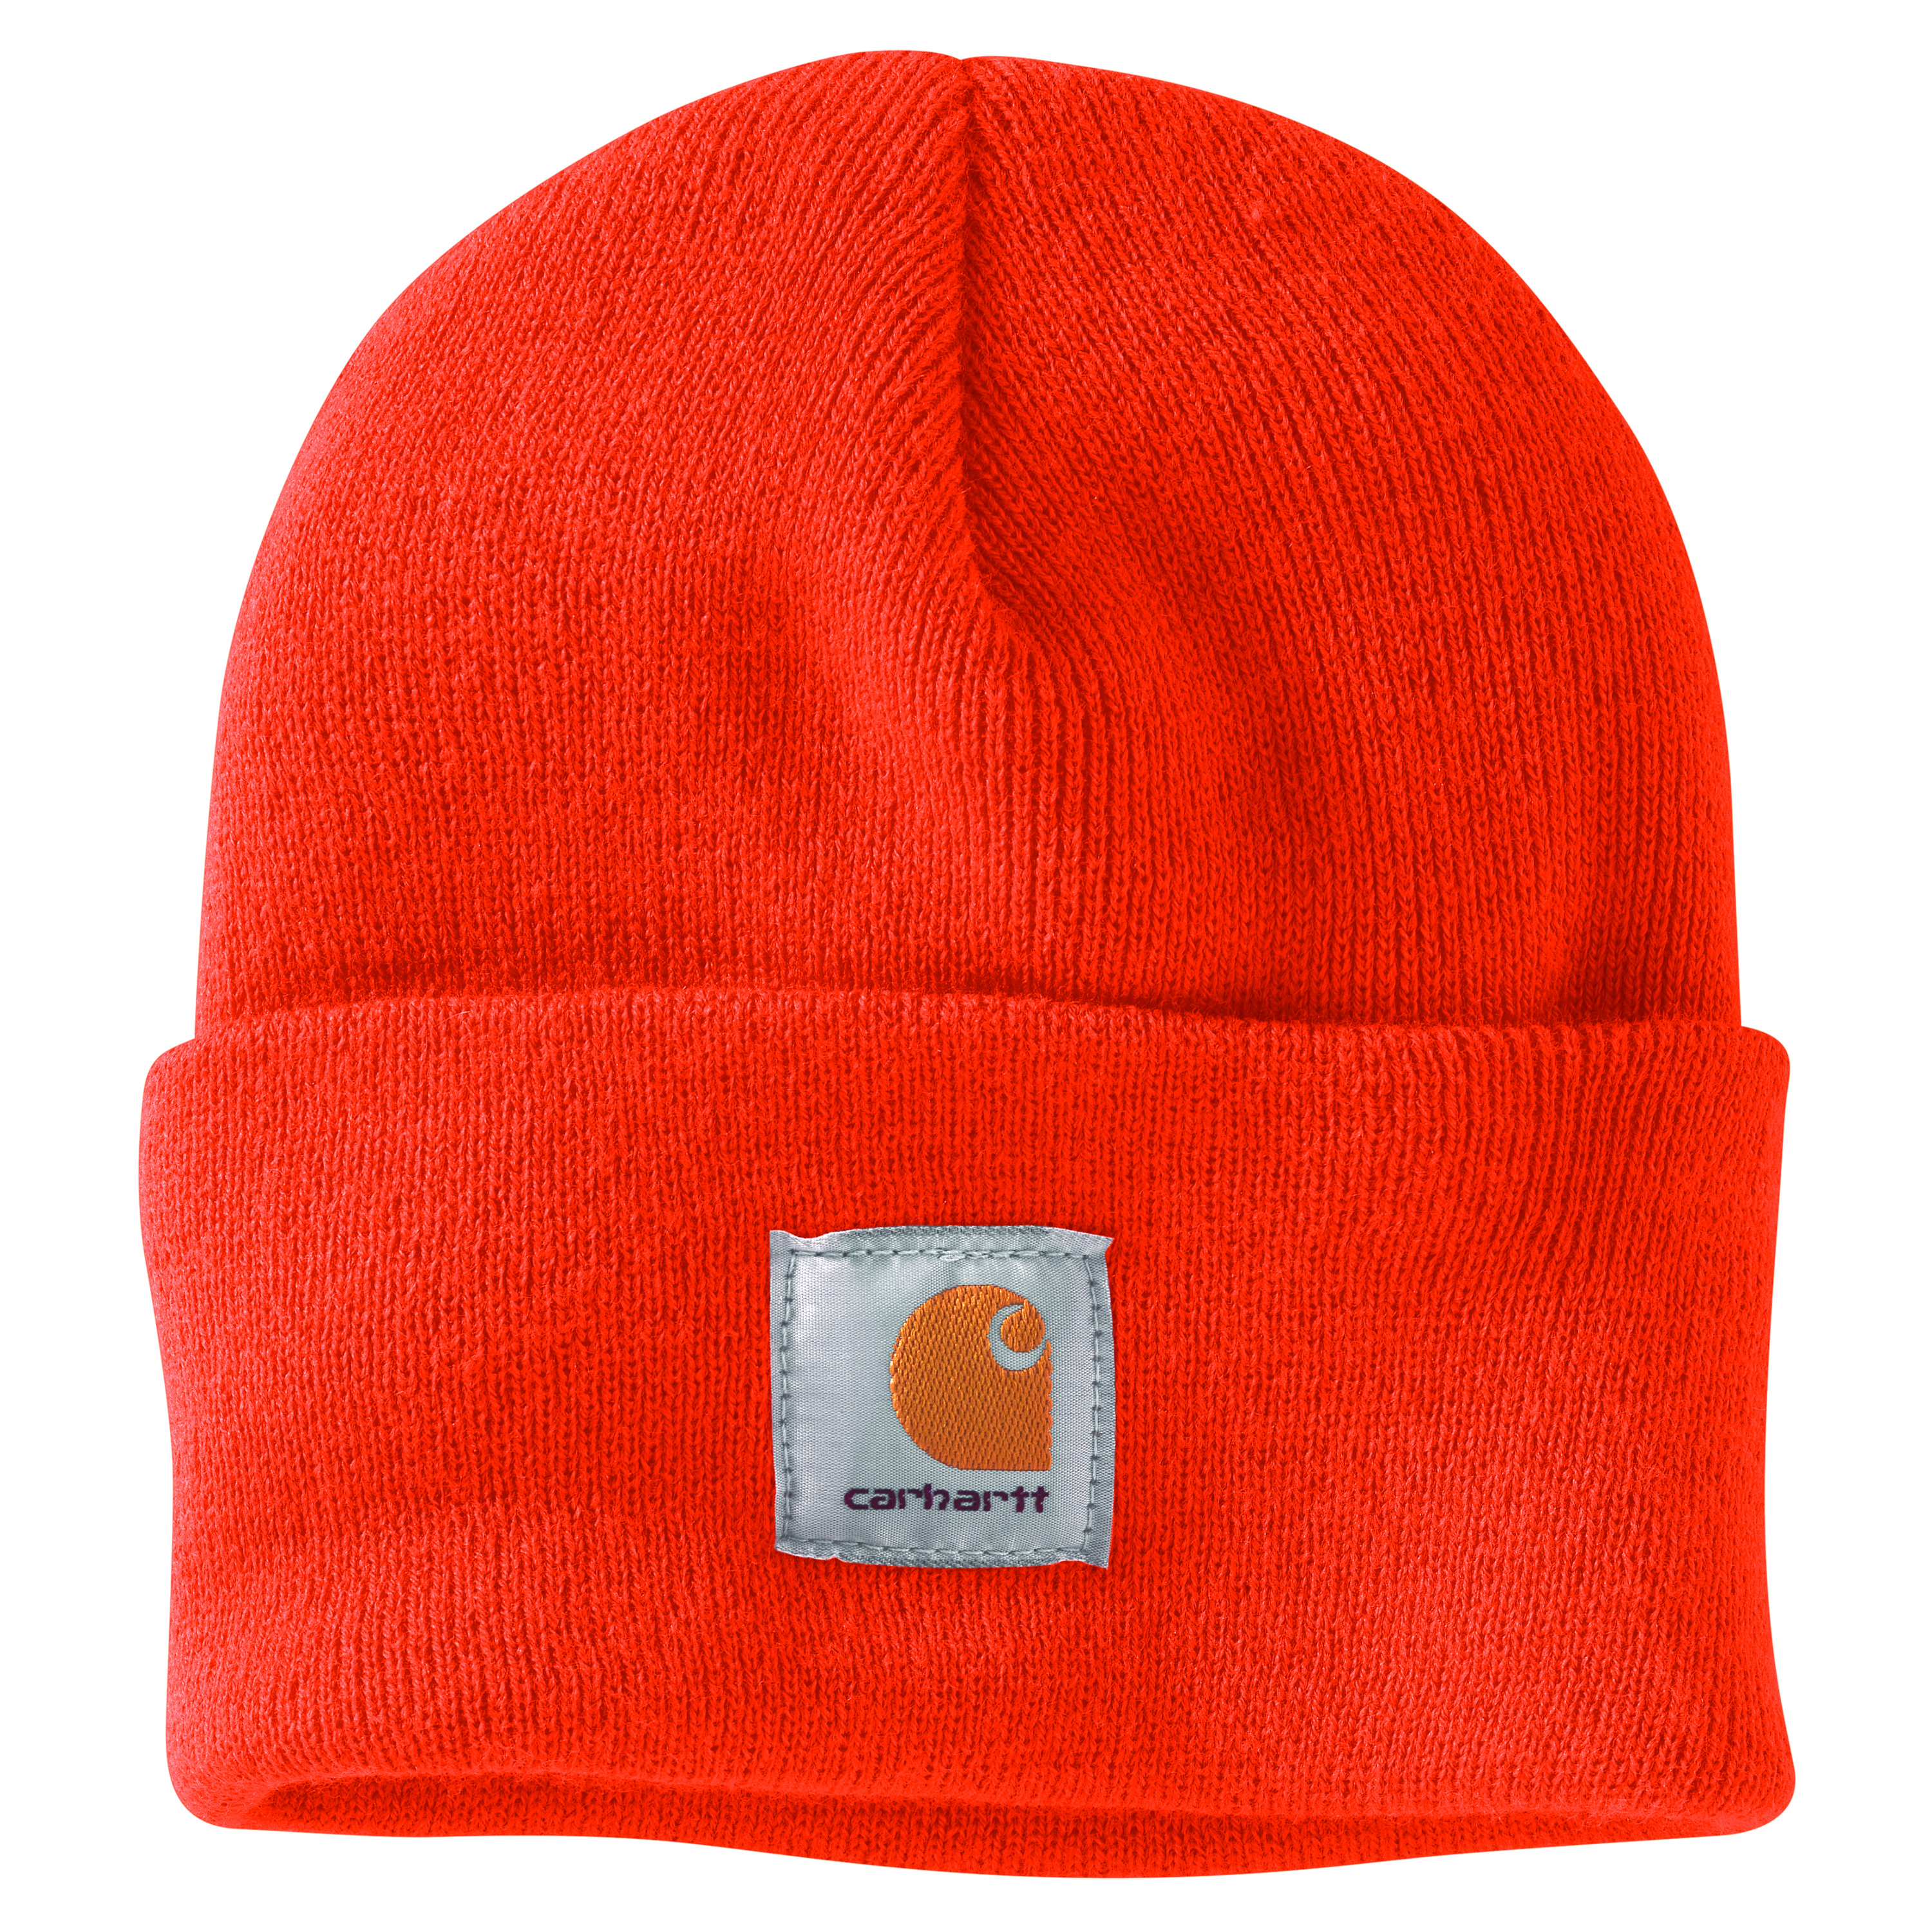 Carhartt Knit Watch Hat - Bright Orange